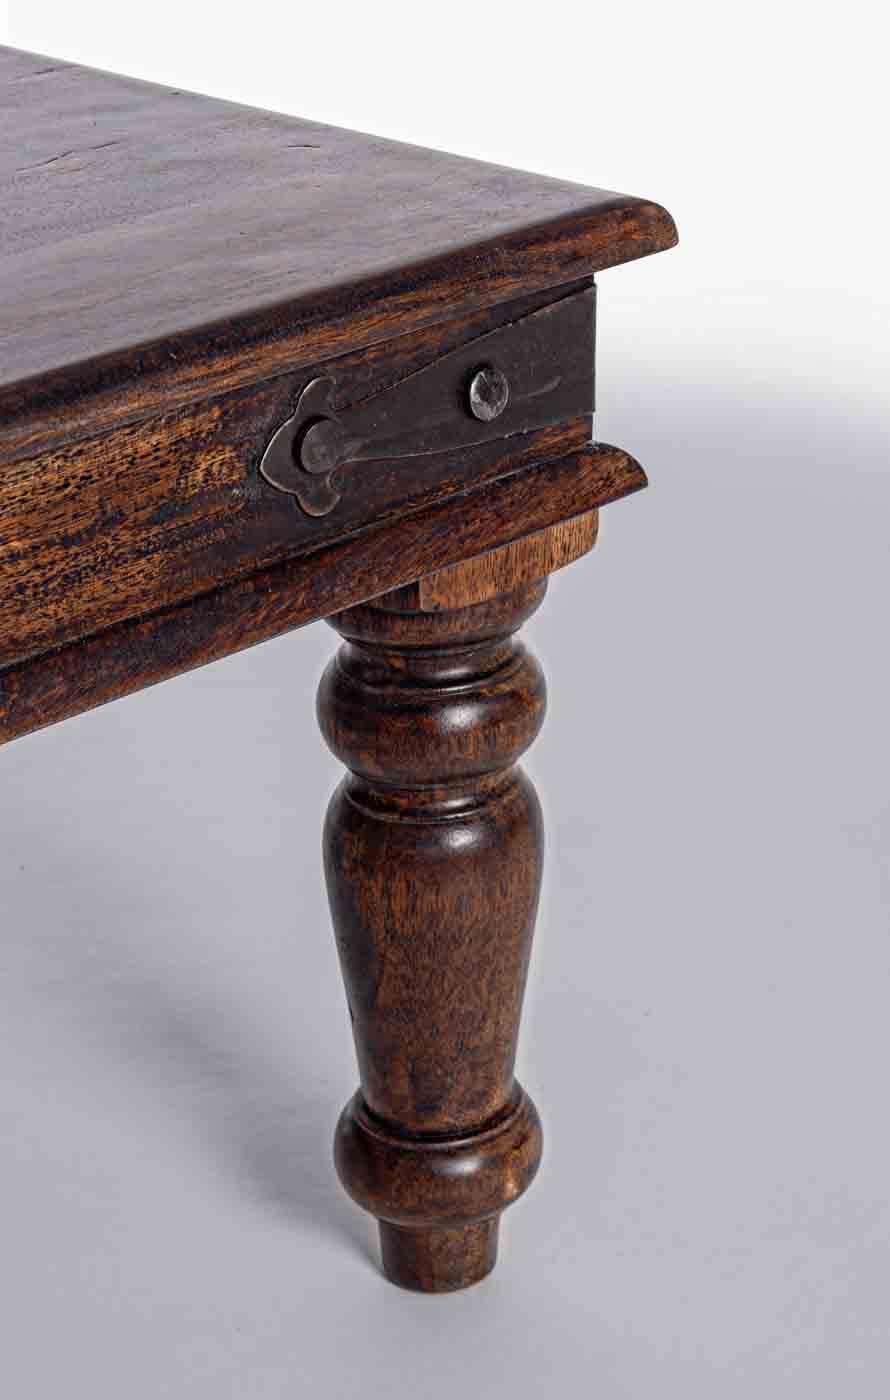 Der massive Beistelltisch Jaipur wurde aus Akazienholz gefertigt. Der Tisch wurde behandelt.